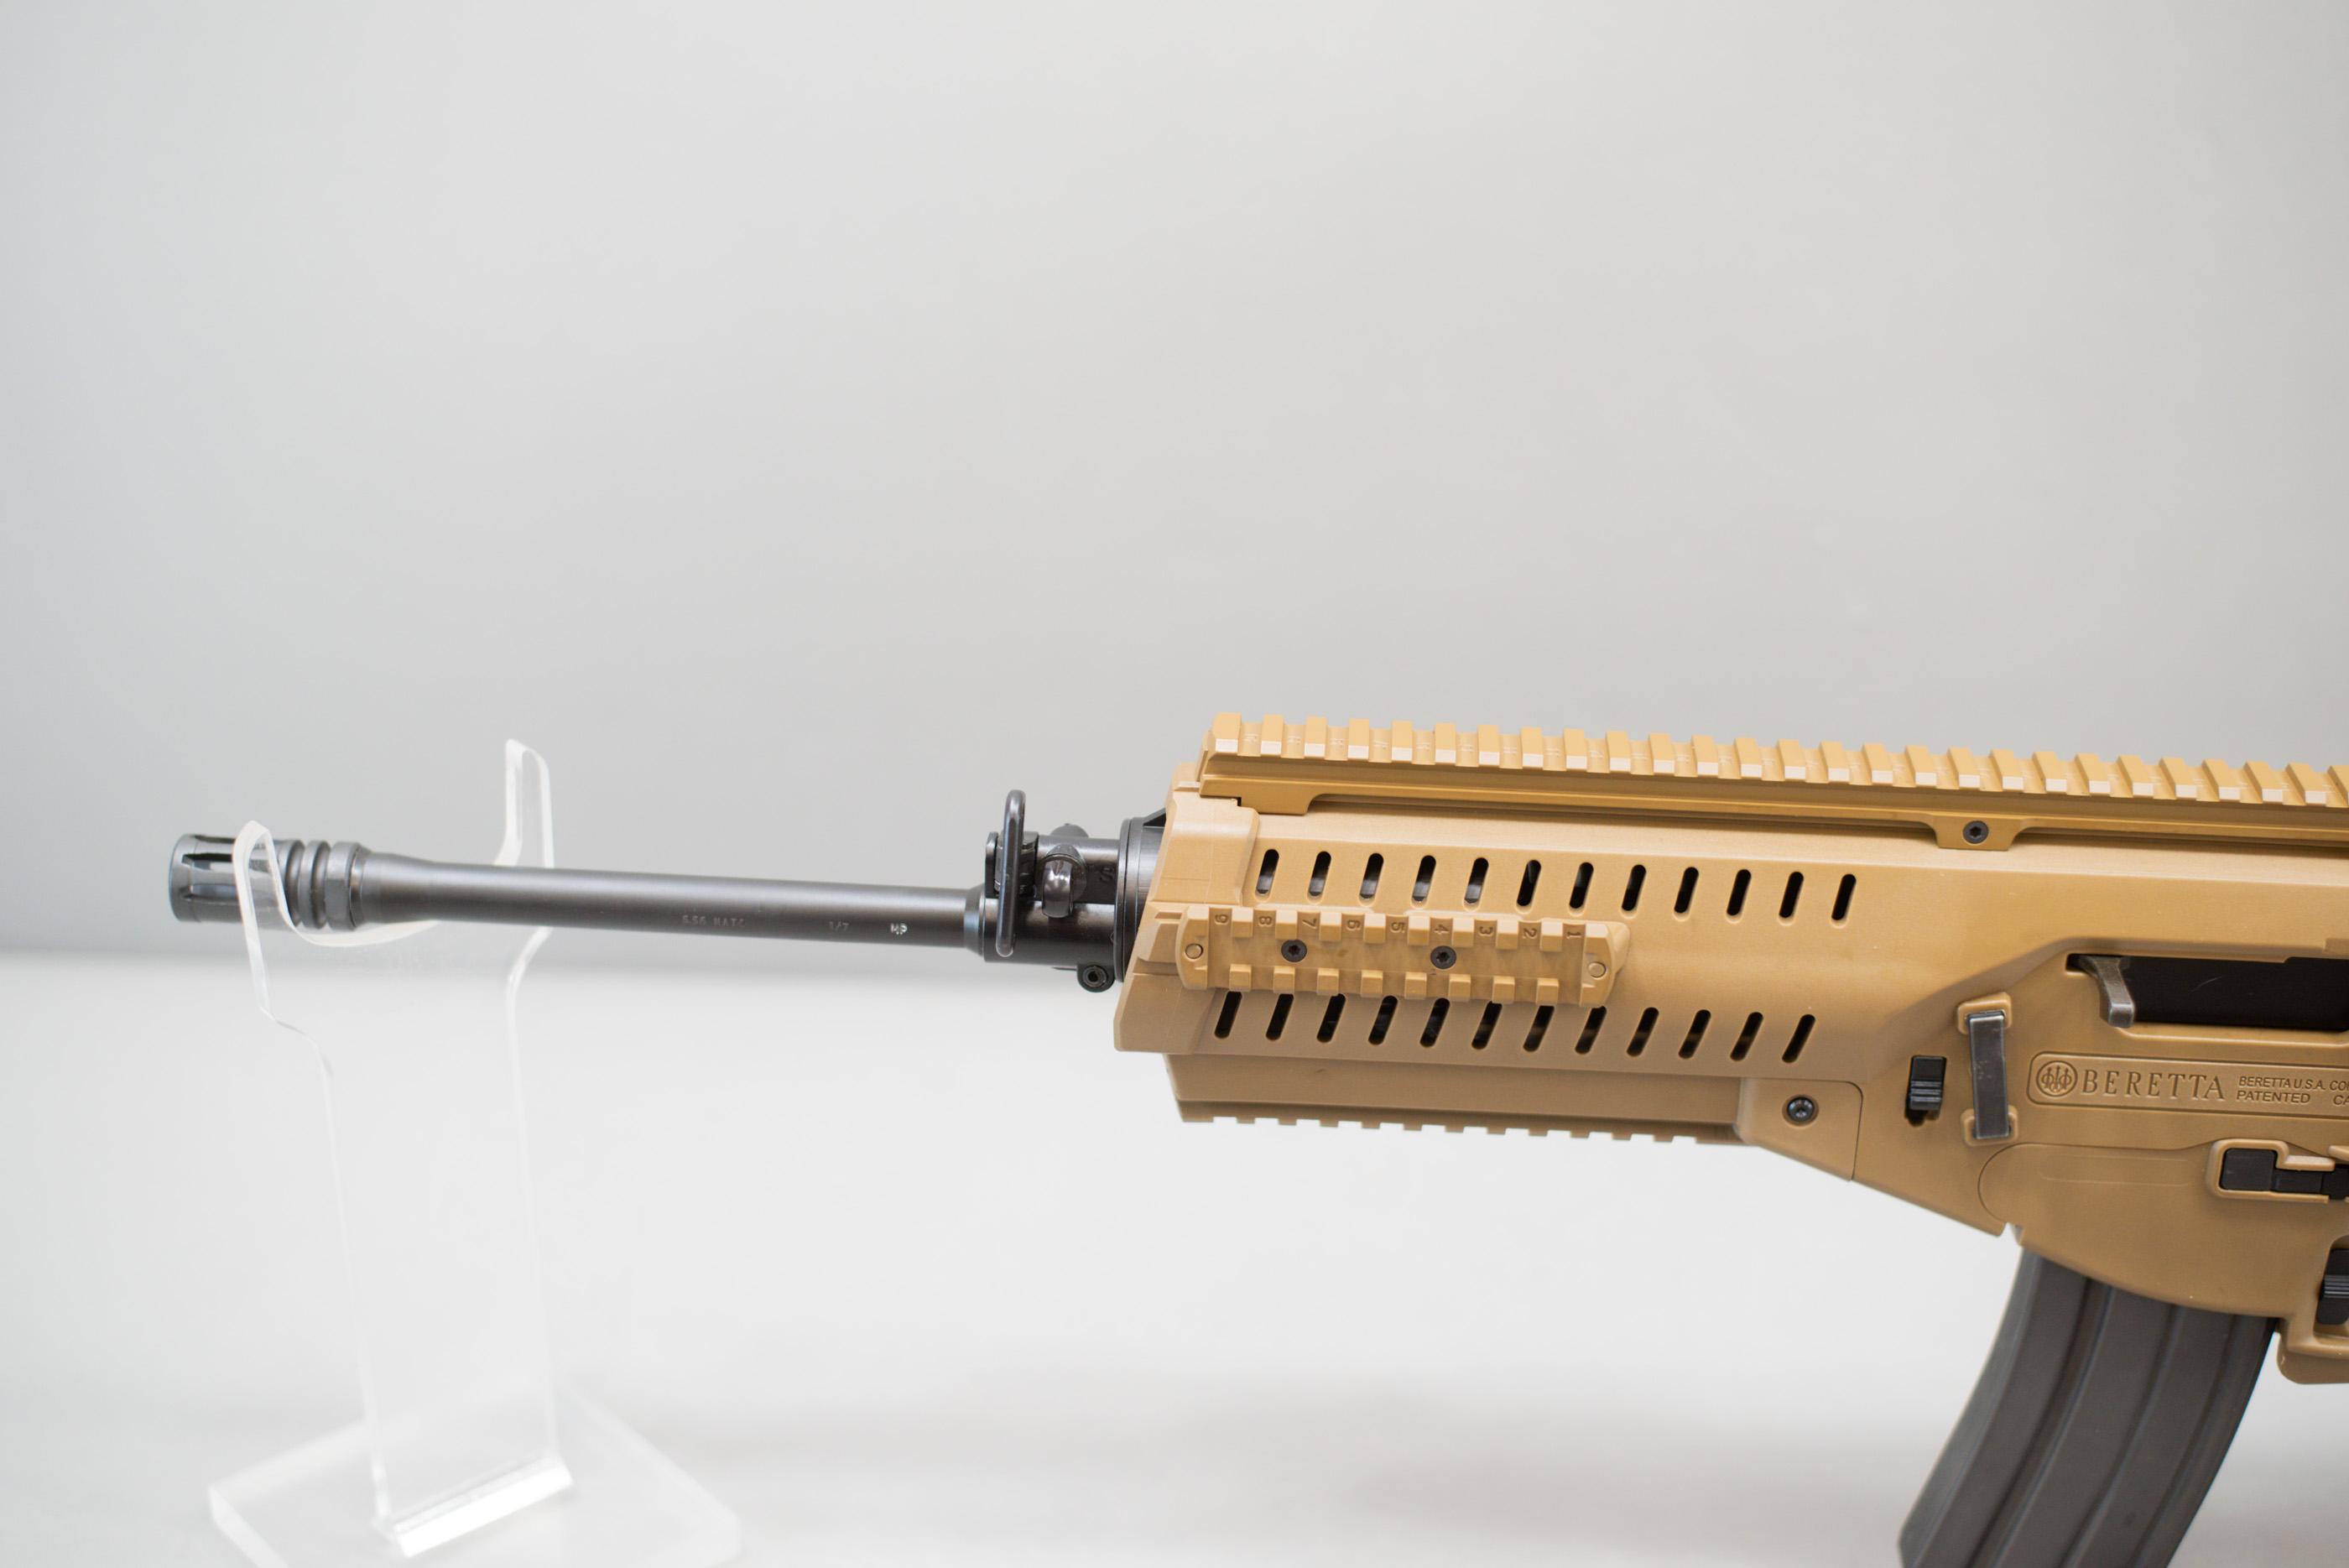 (R) Beretta ARX-100 5.56 Nato Rifle